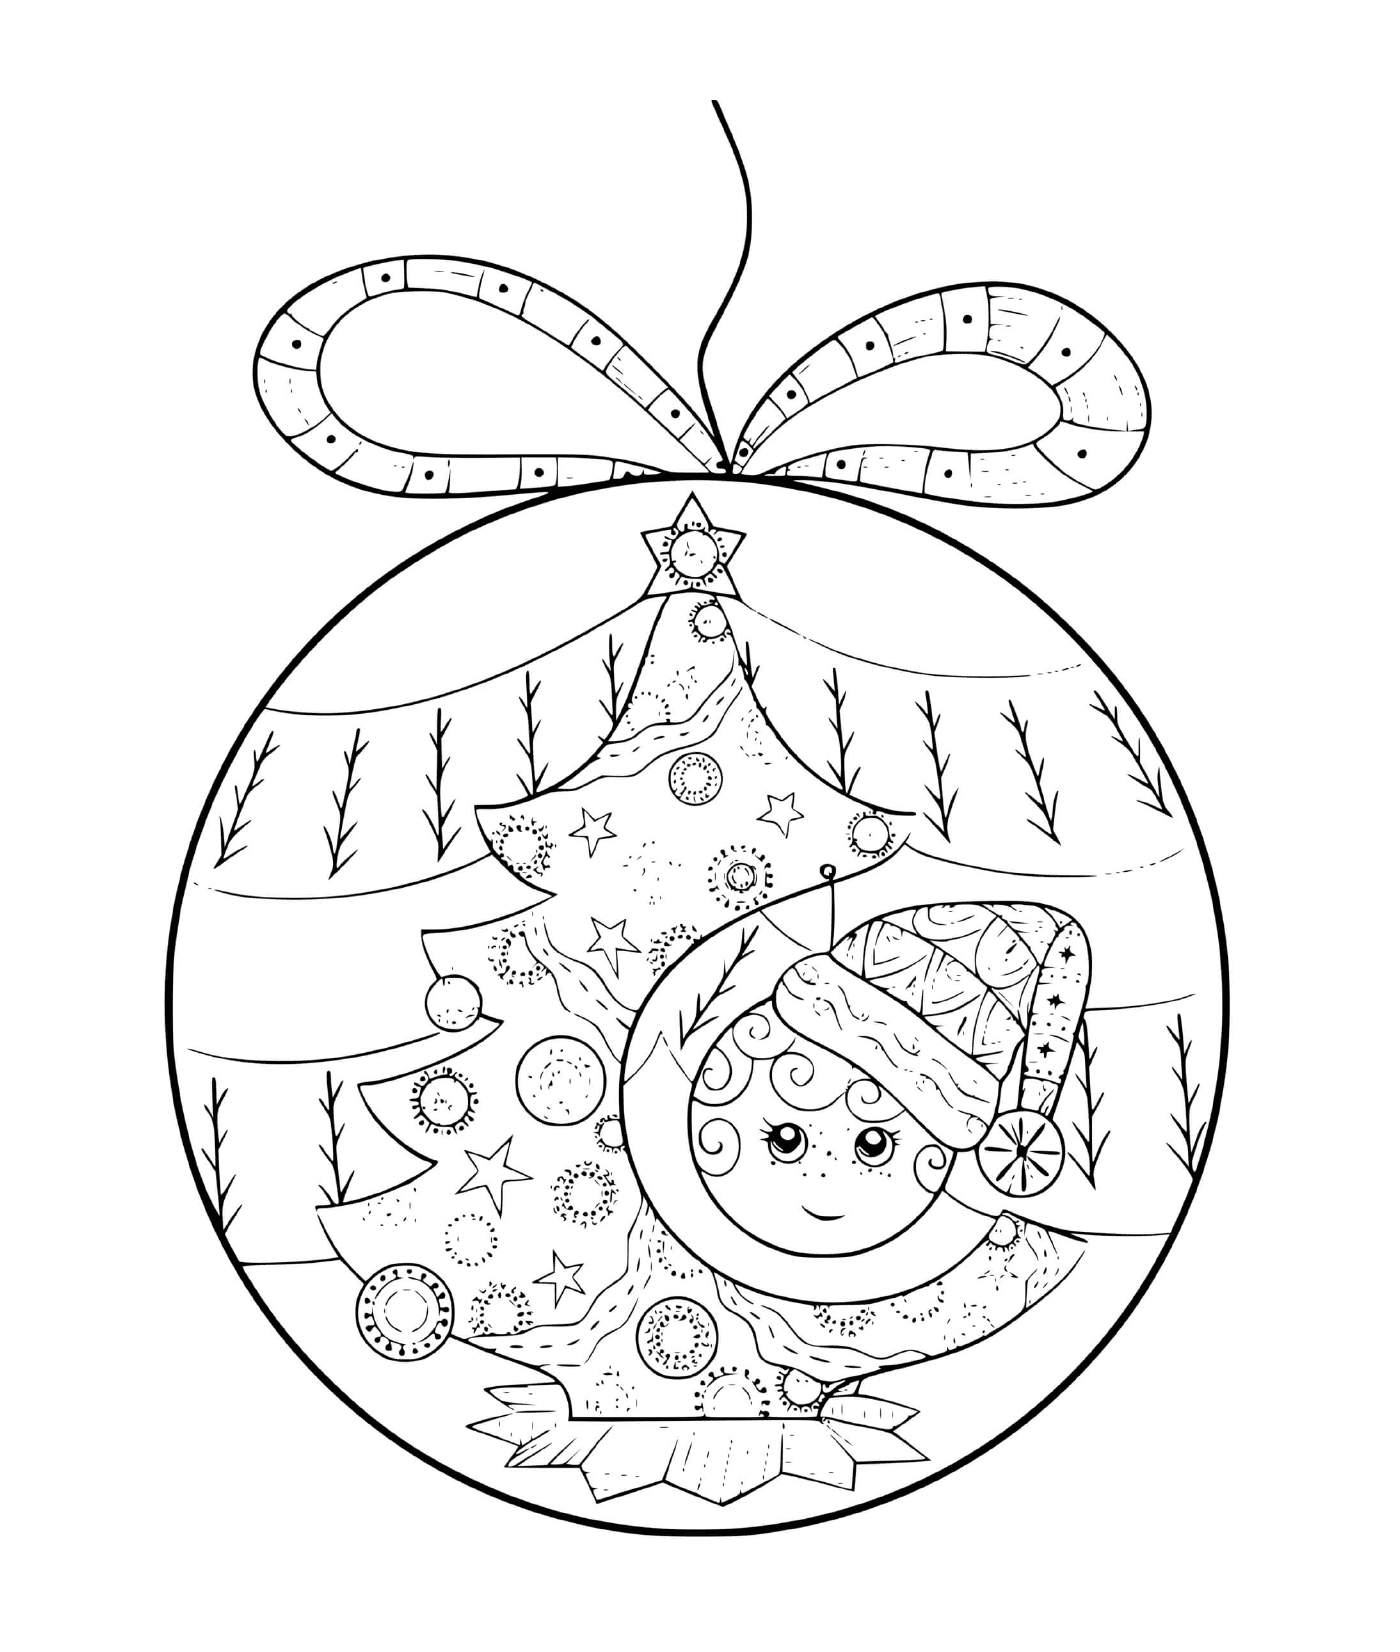  كرة عيد الميلاد مع طفل و شجرة 